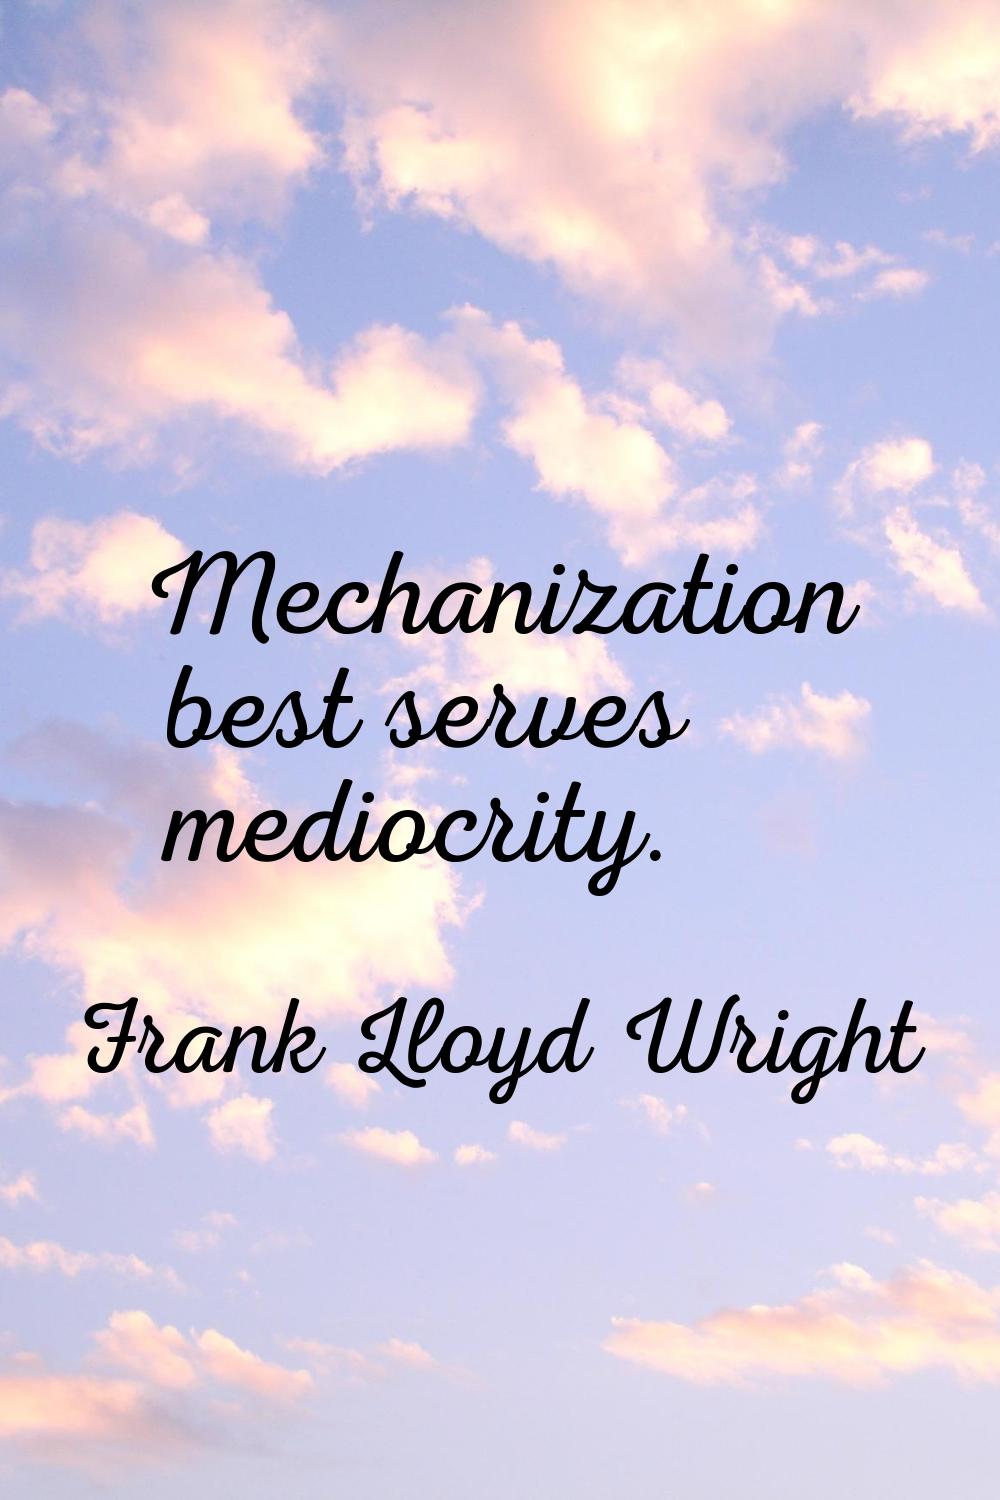 Mechanization best serves mediocrity.